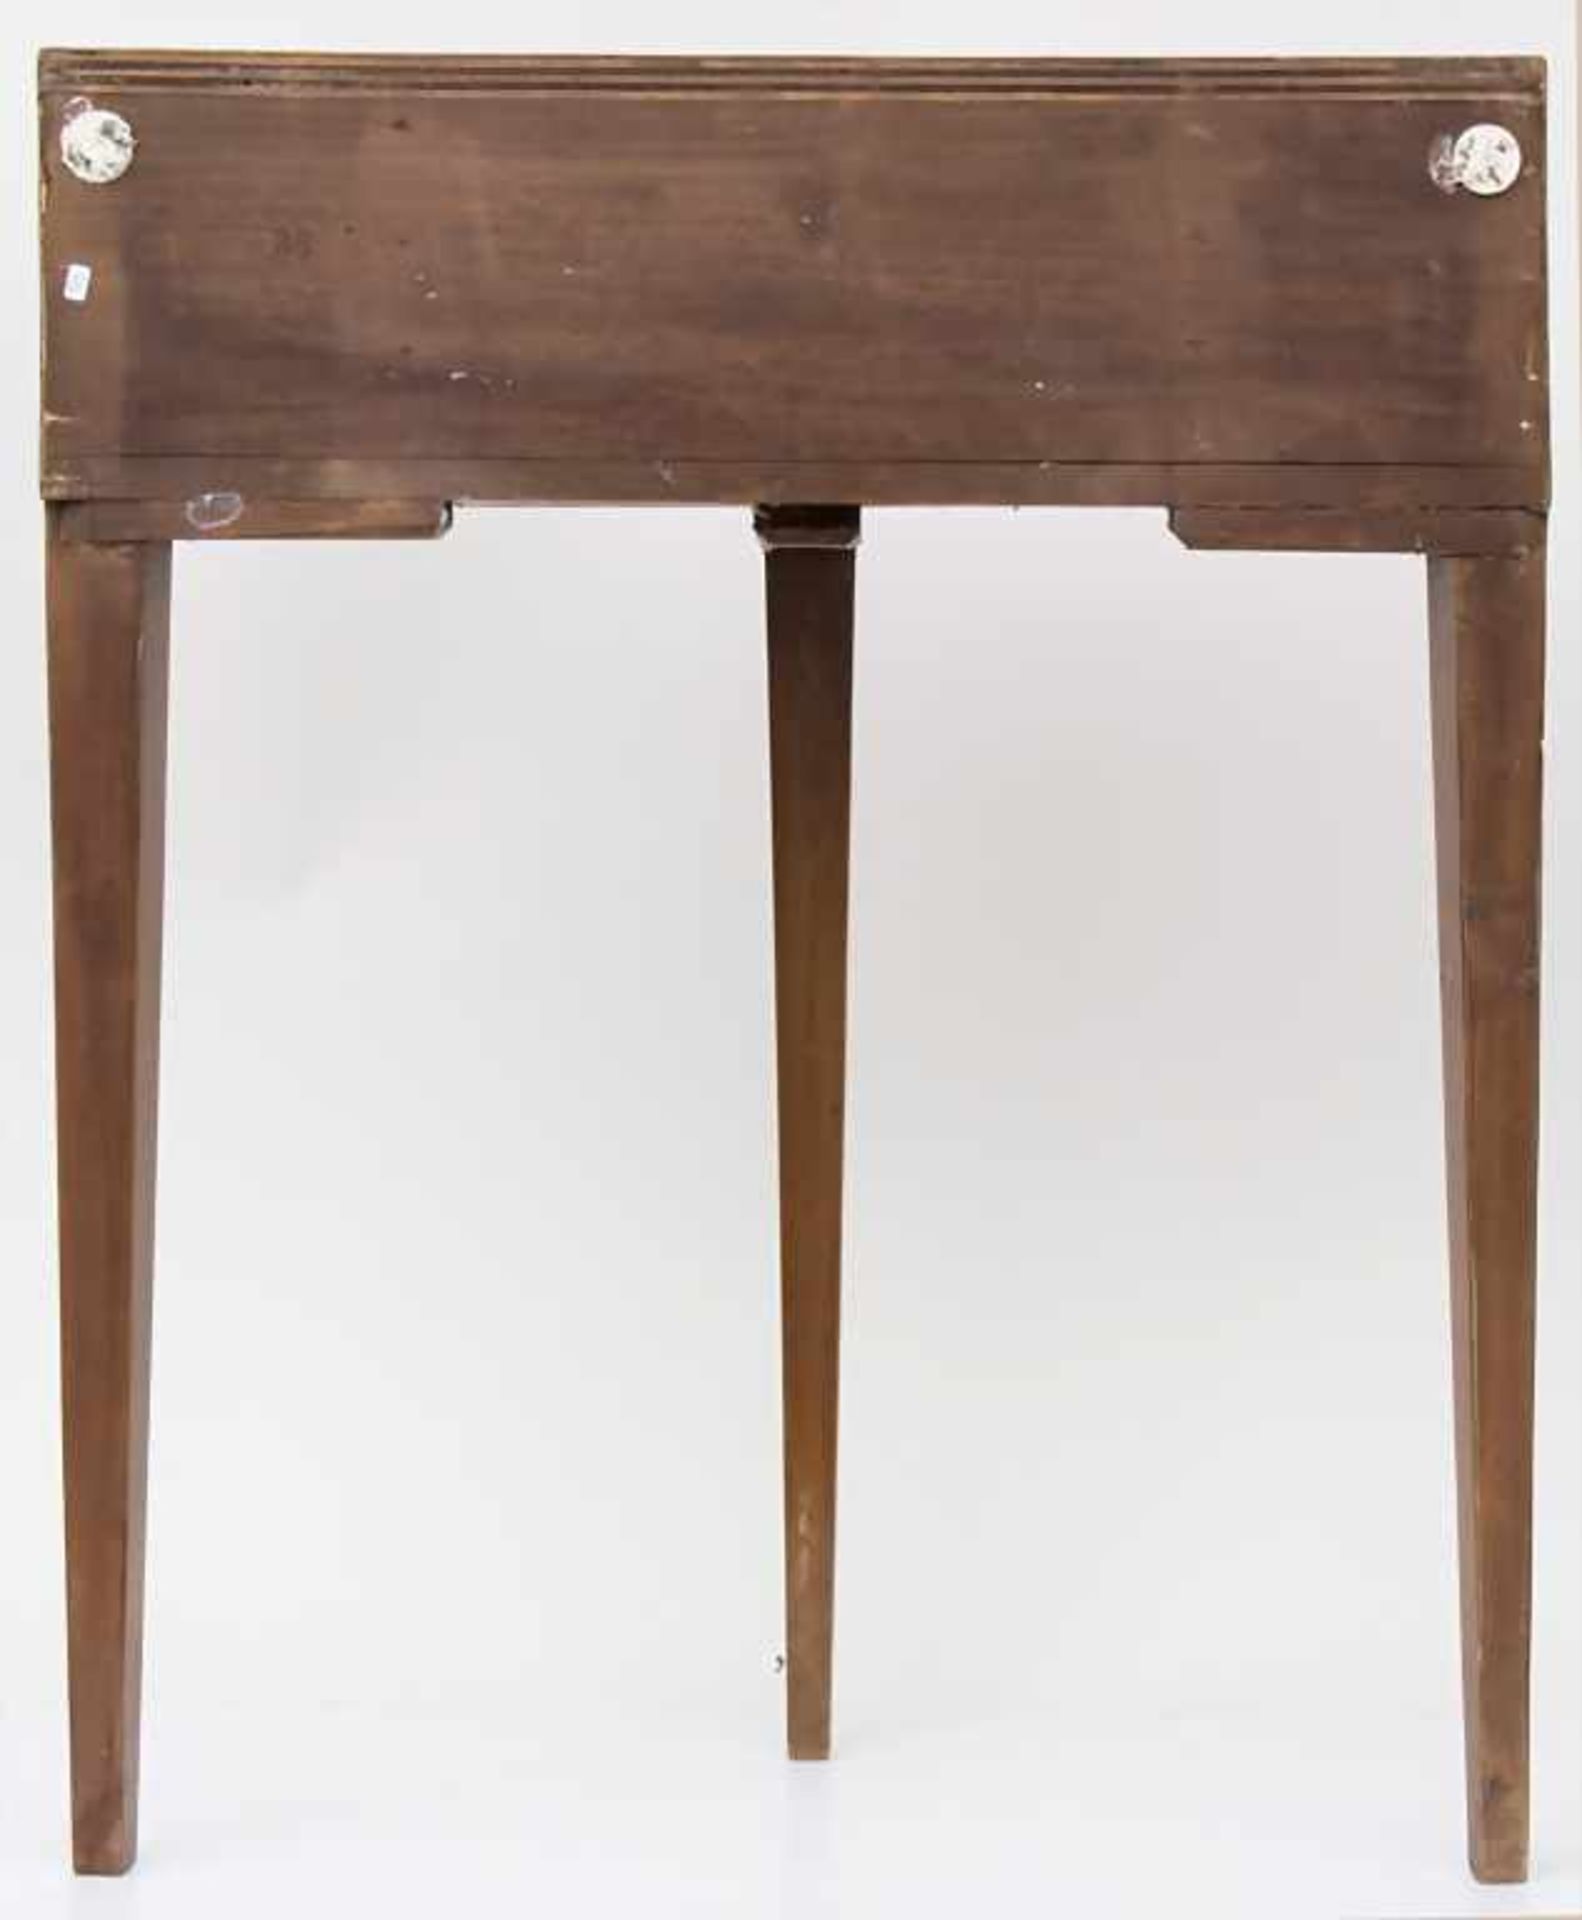 Konsoltisch 'Demi Lune' / A console table 'Demi Lune'Technik: Holz, furniert, Schublade mit - Bild 2 aus 13